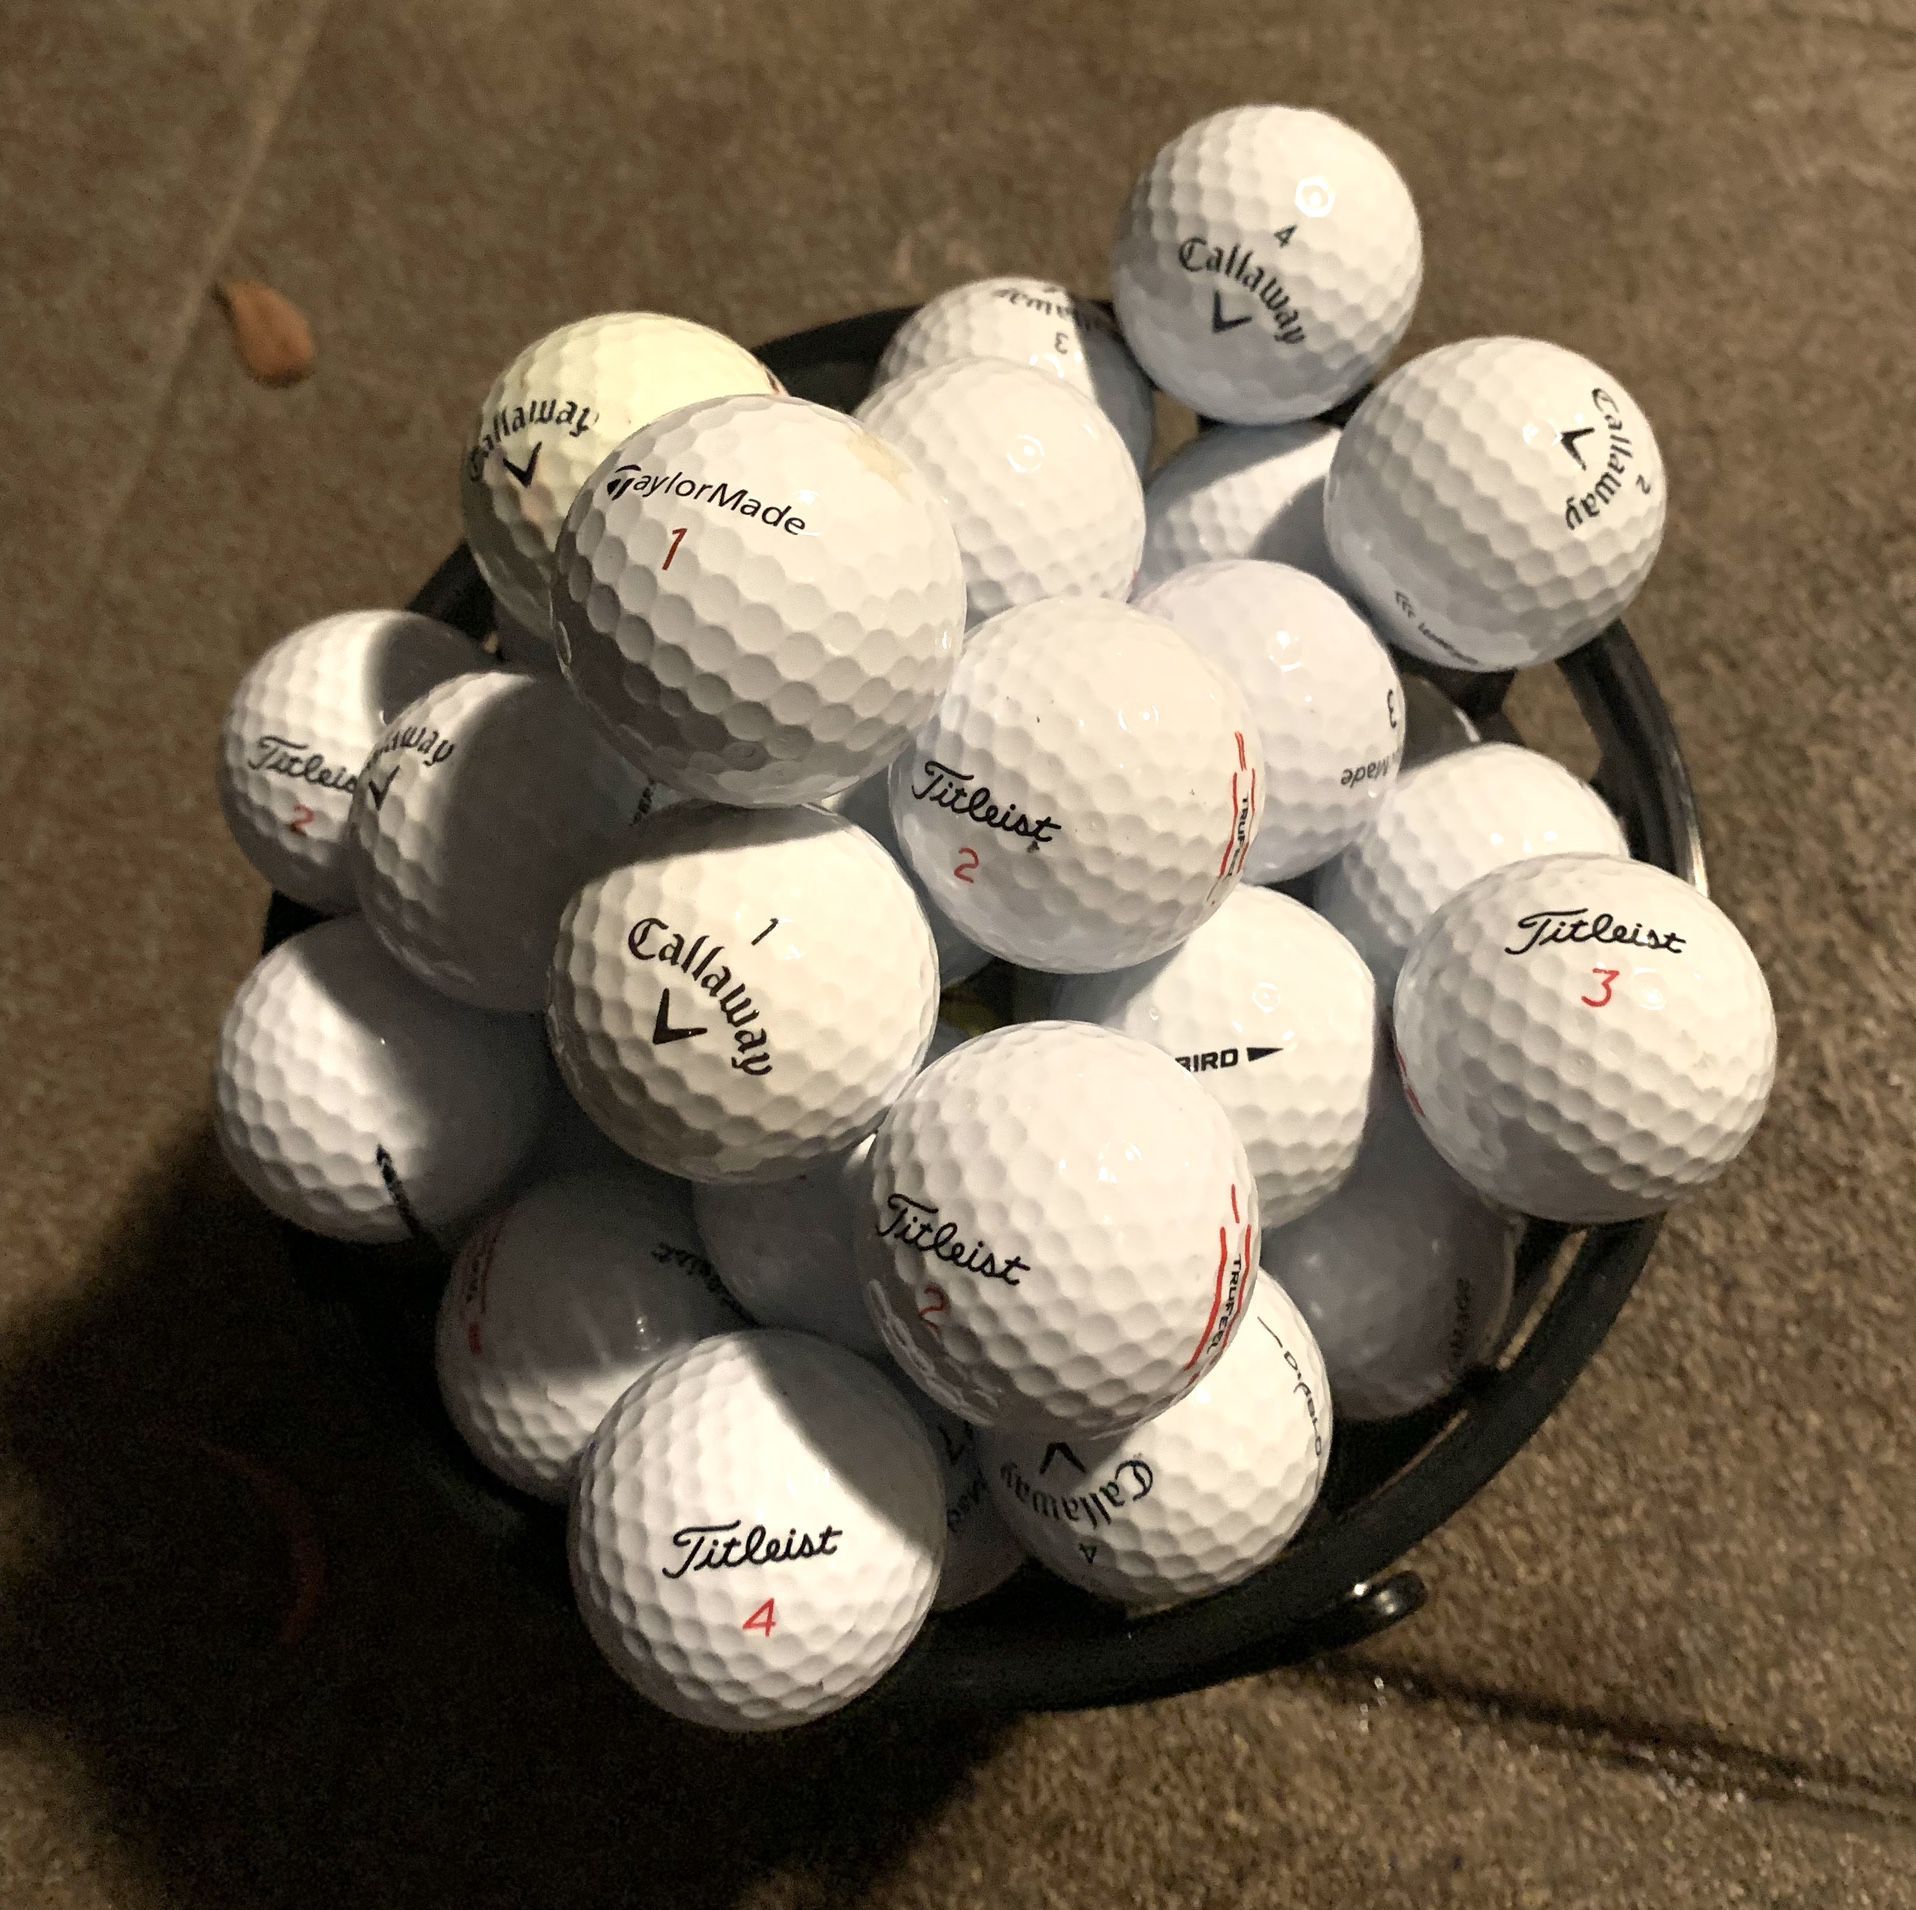 60 Top Brand Golf Balls